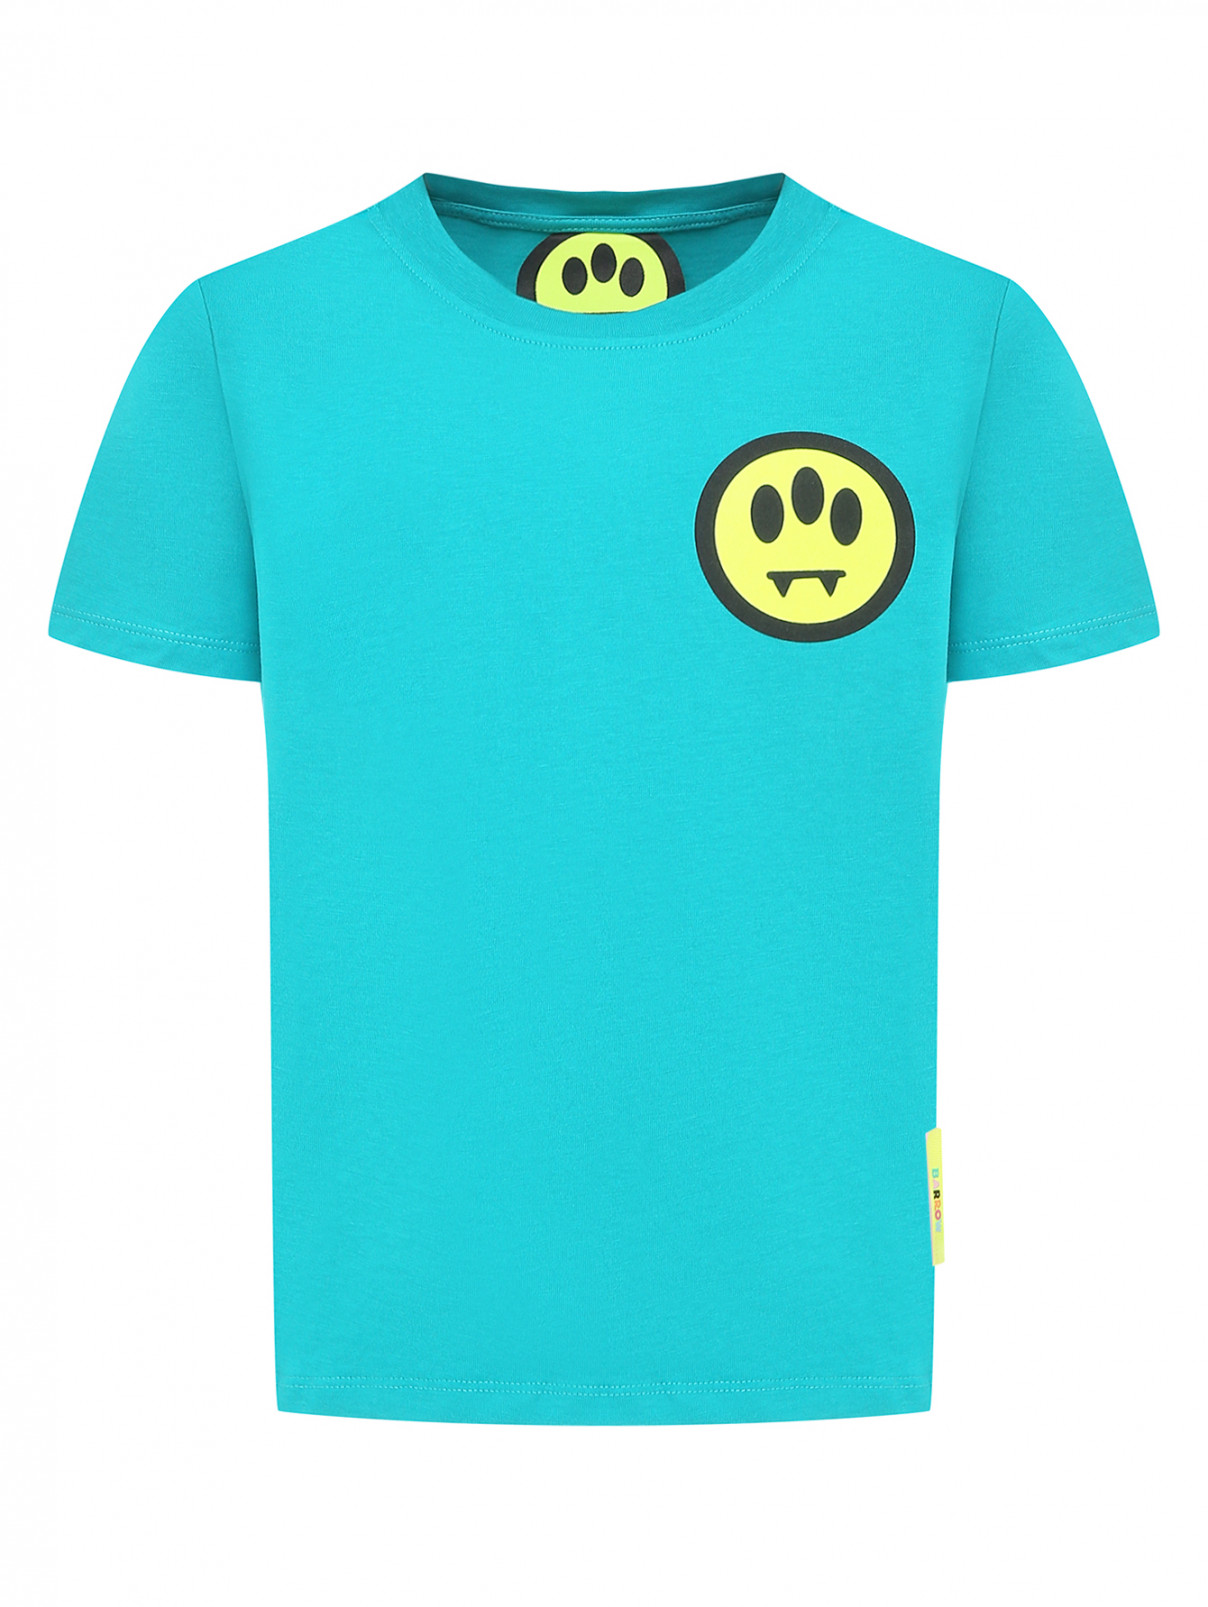 Трикотажная футболка с принтом Barrow Kids  –  Общий вид  – Цвет:  Синий